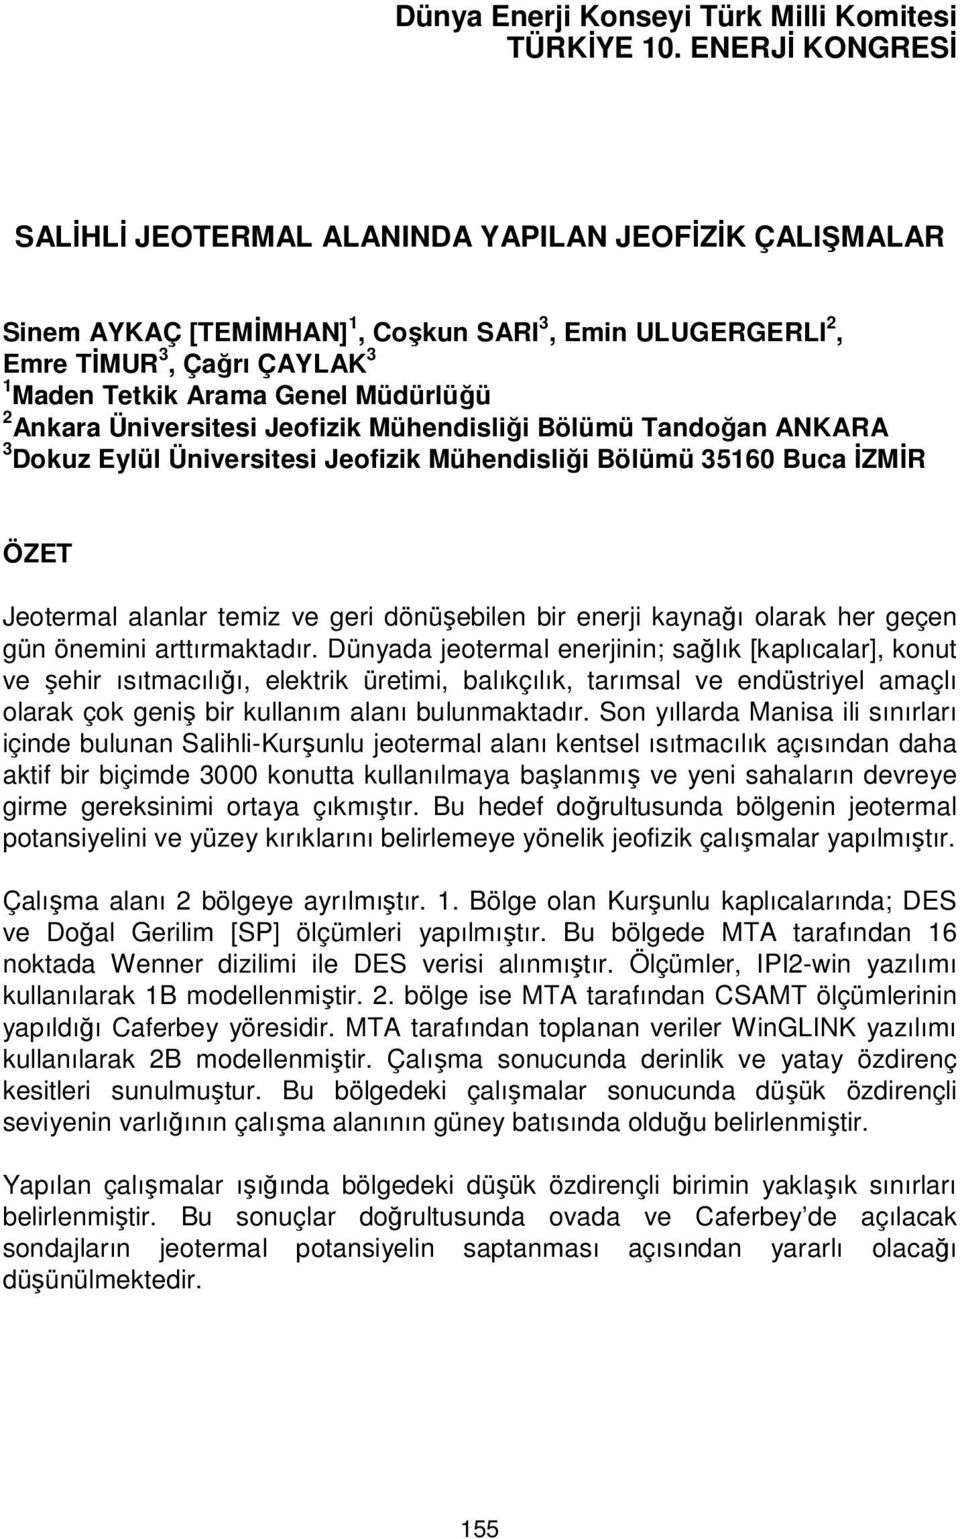 Ankara Üniversitesi Jeofizik Mühendisliği Bölümü Tandoğan ANKARA 3 Dokuz Eylül Üniversitesi Jeofizik Mühendisliği Bölümü 35160 Buca İZMİR ÖZET Jeotermal alanlar temiz ve geri dönüşebilen bir enerji